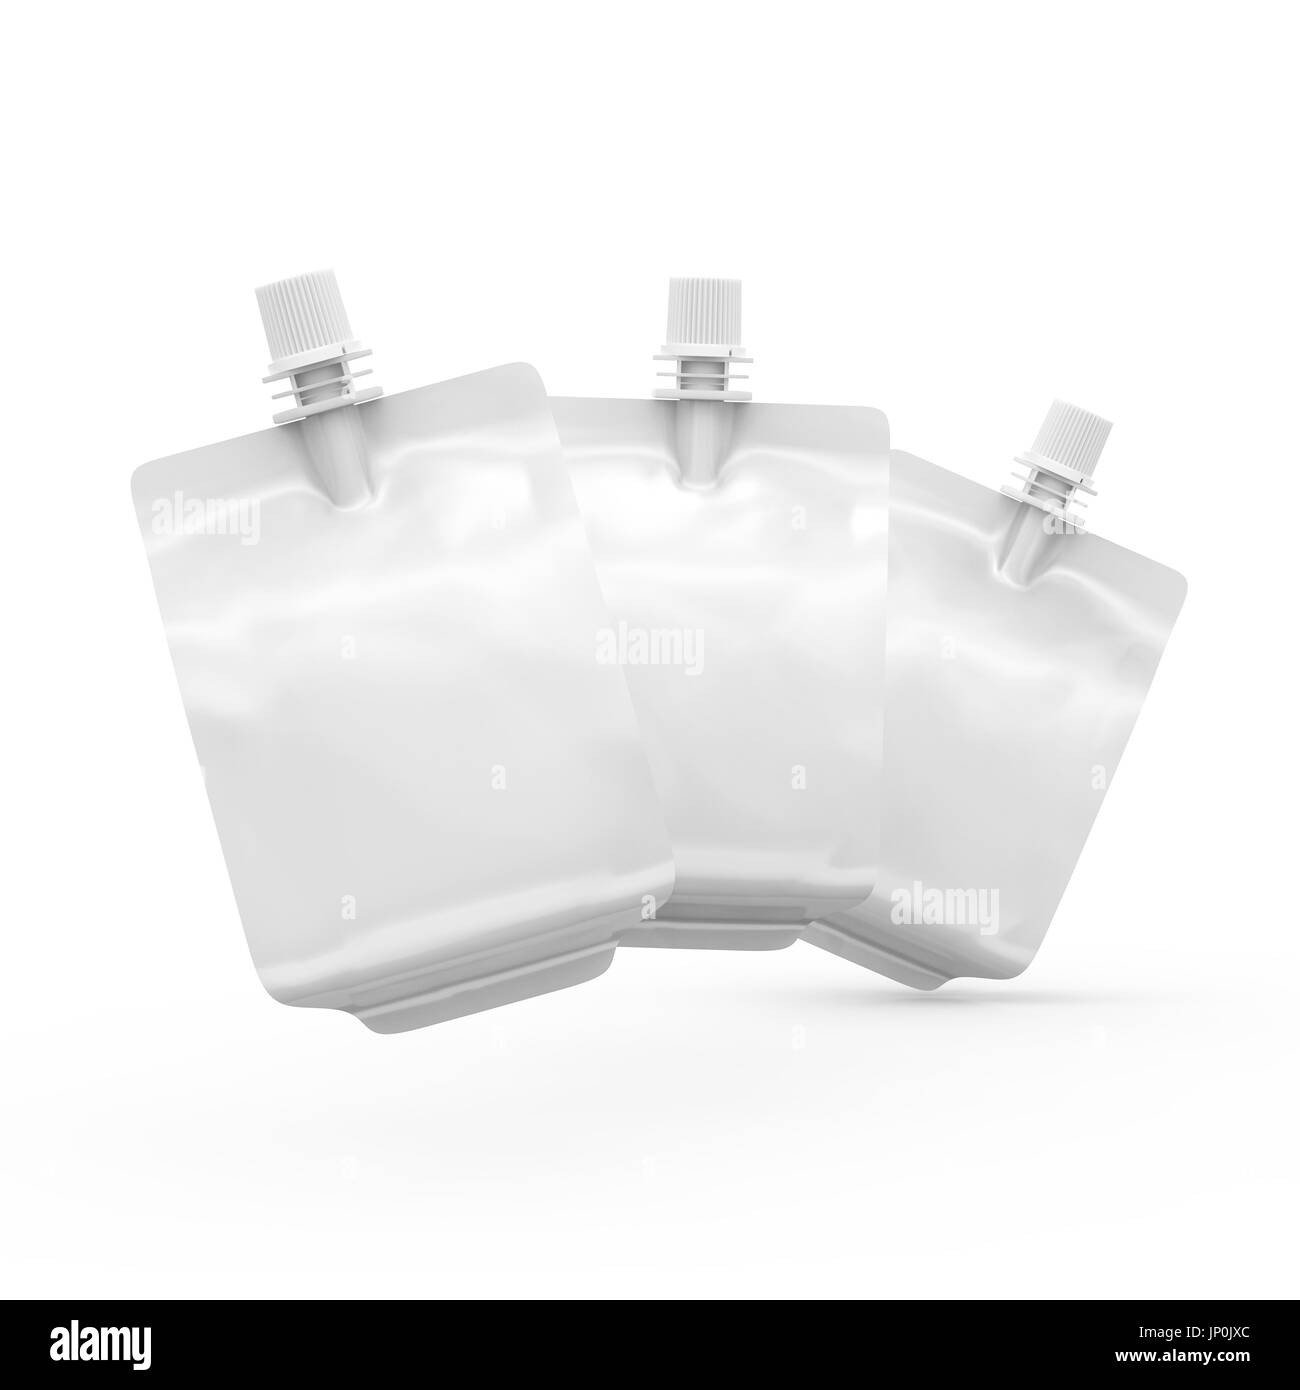 Folienbeutel für Getränke oder Essen, leere Folie Tasche Modell für Getränke Design in 3D-Rendering, drei in der Luft schweben Stockfoto